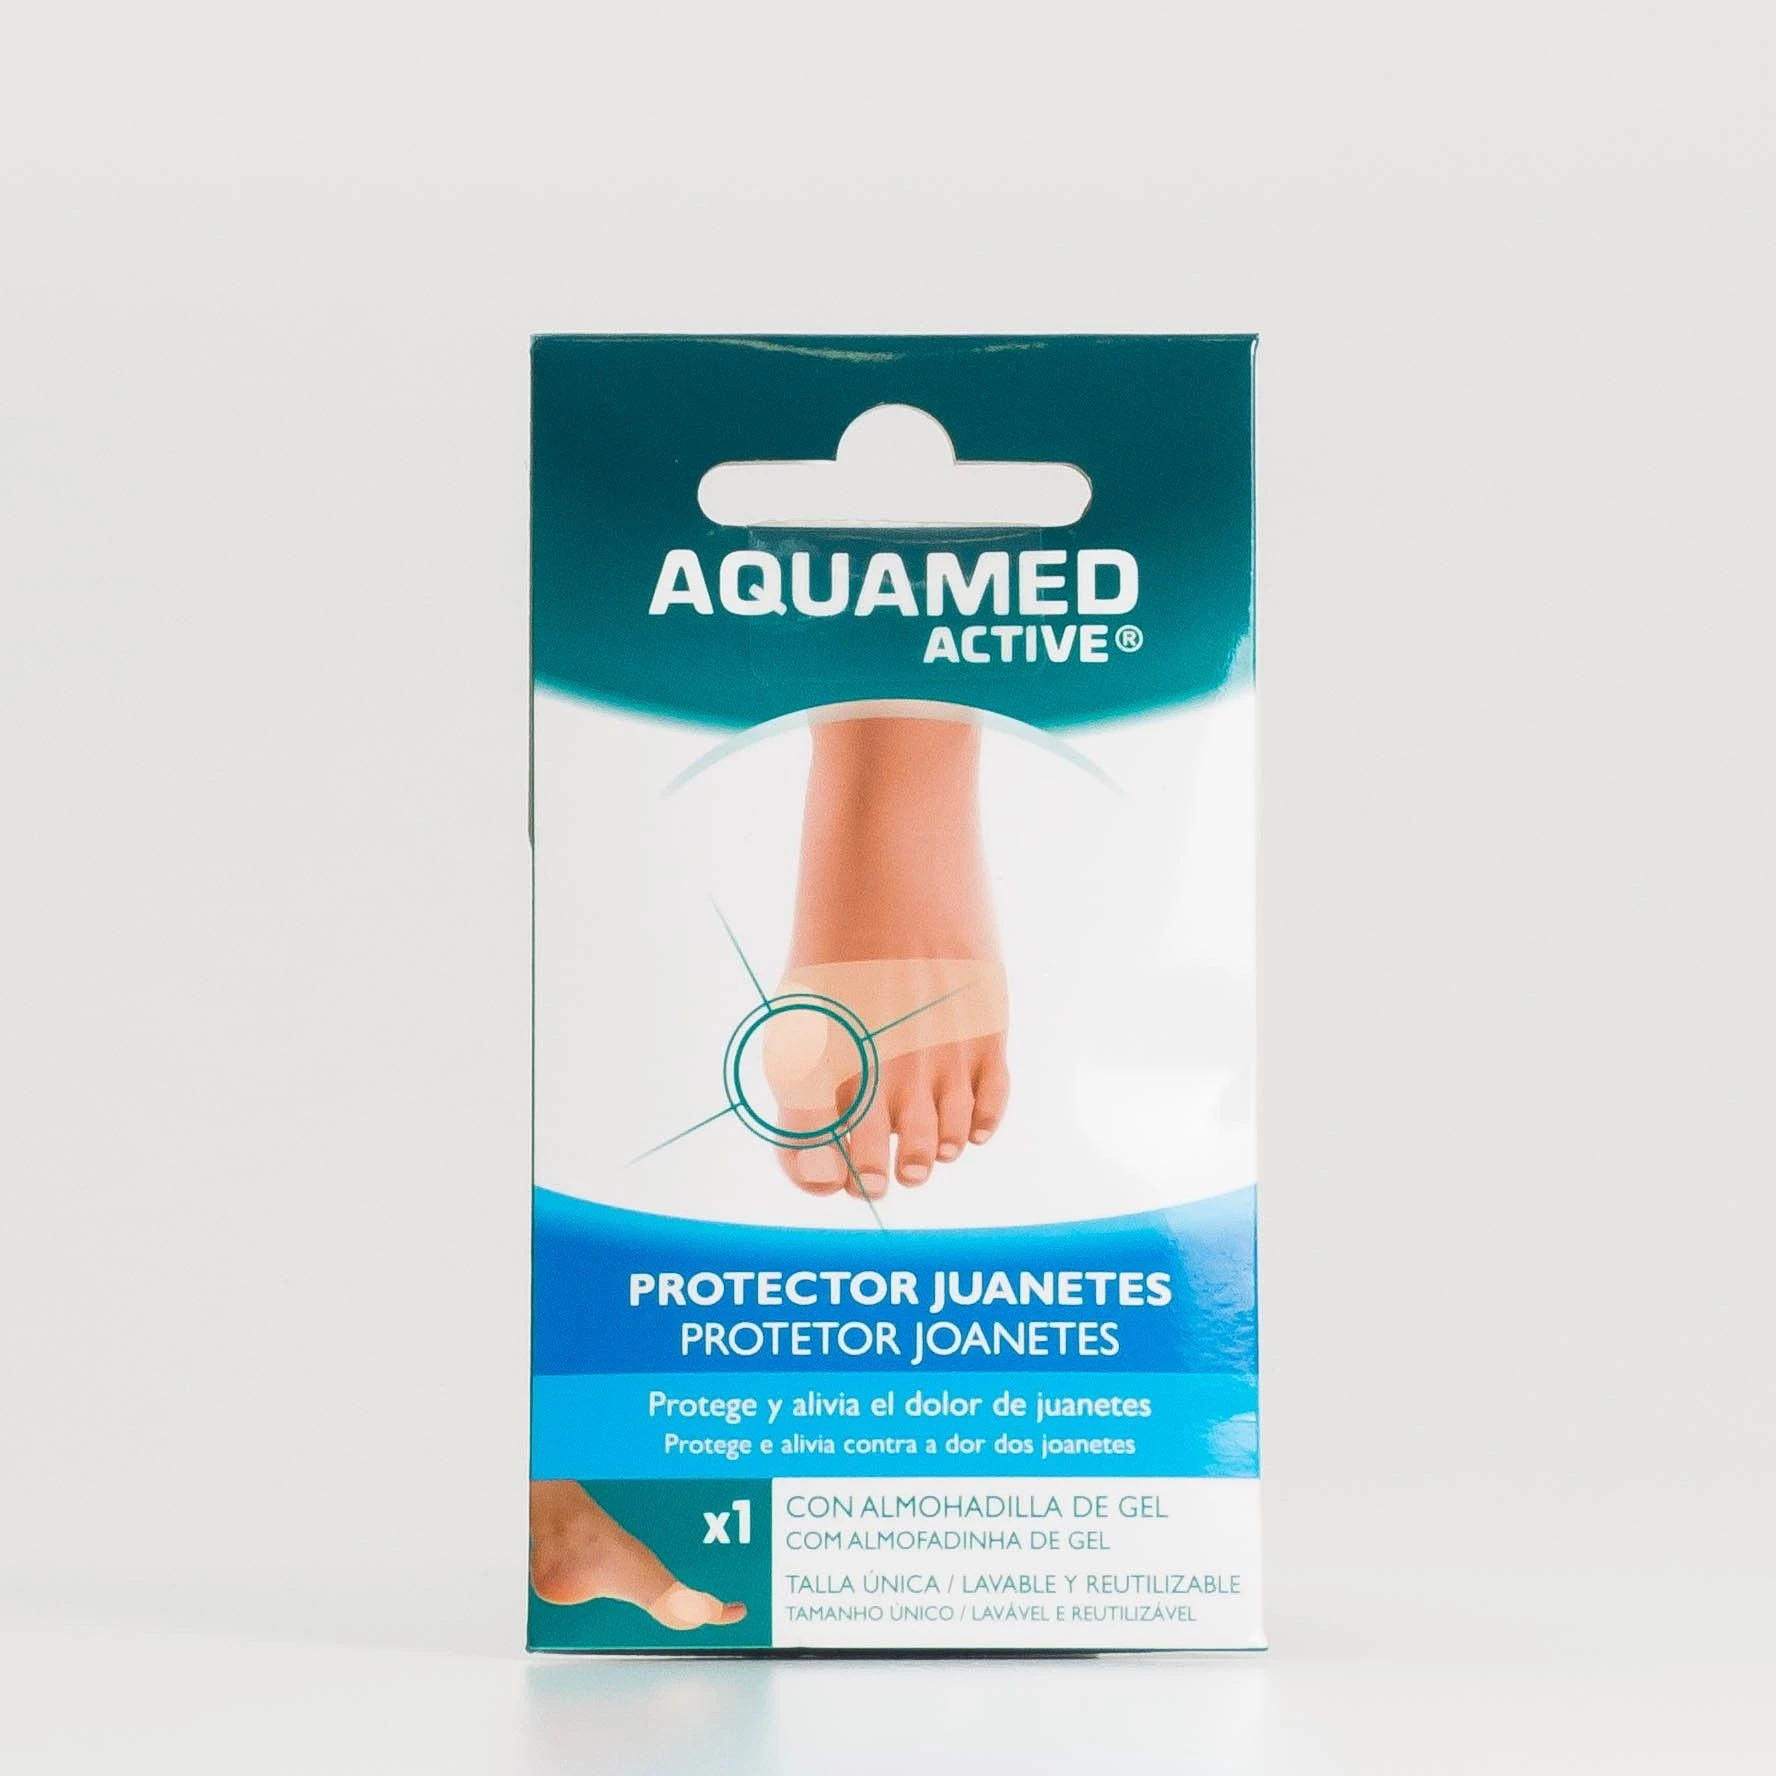 Aquamed Protector juanetes , 1 Apósito. 